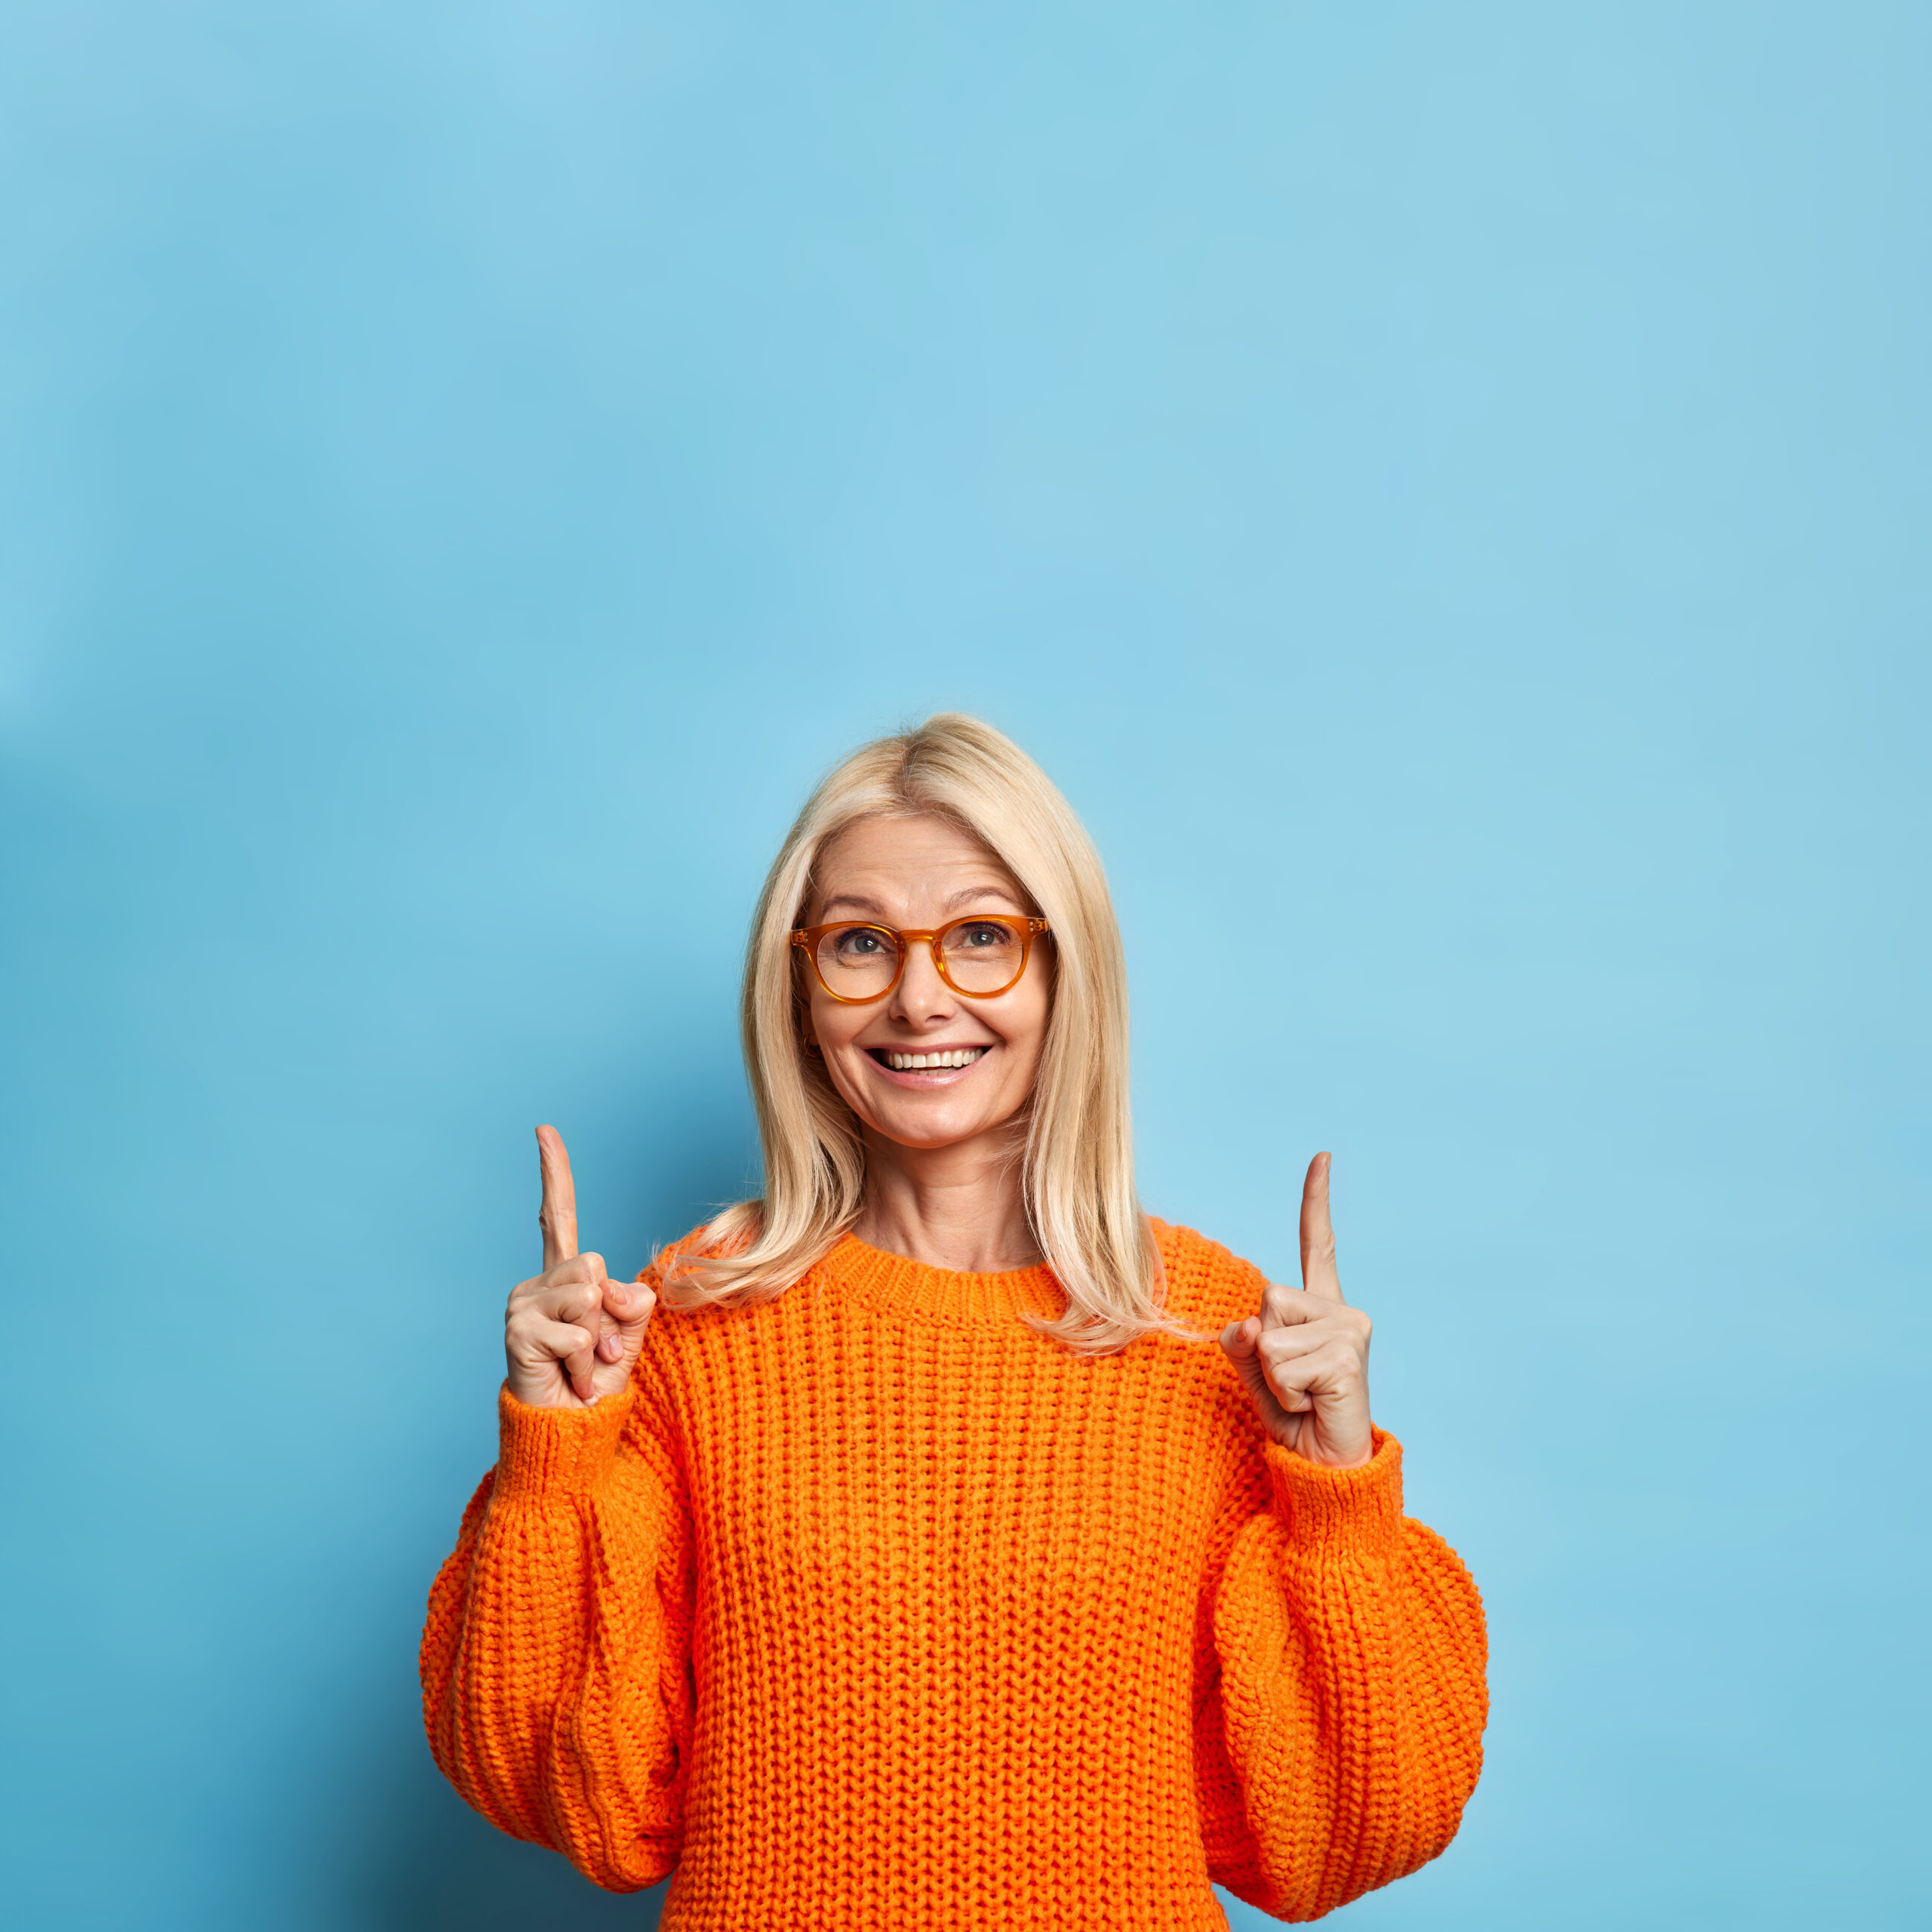 jolie blonde femme quarante ans sourit joyeusement pointant vers espace copie porte lunettes chandail orange scaled